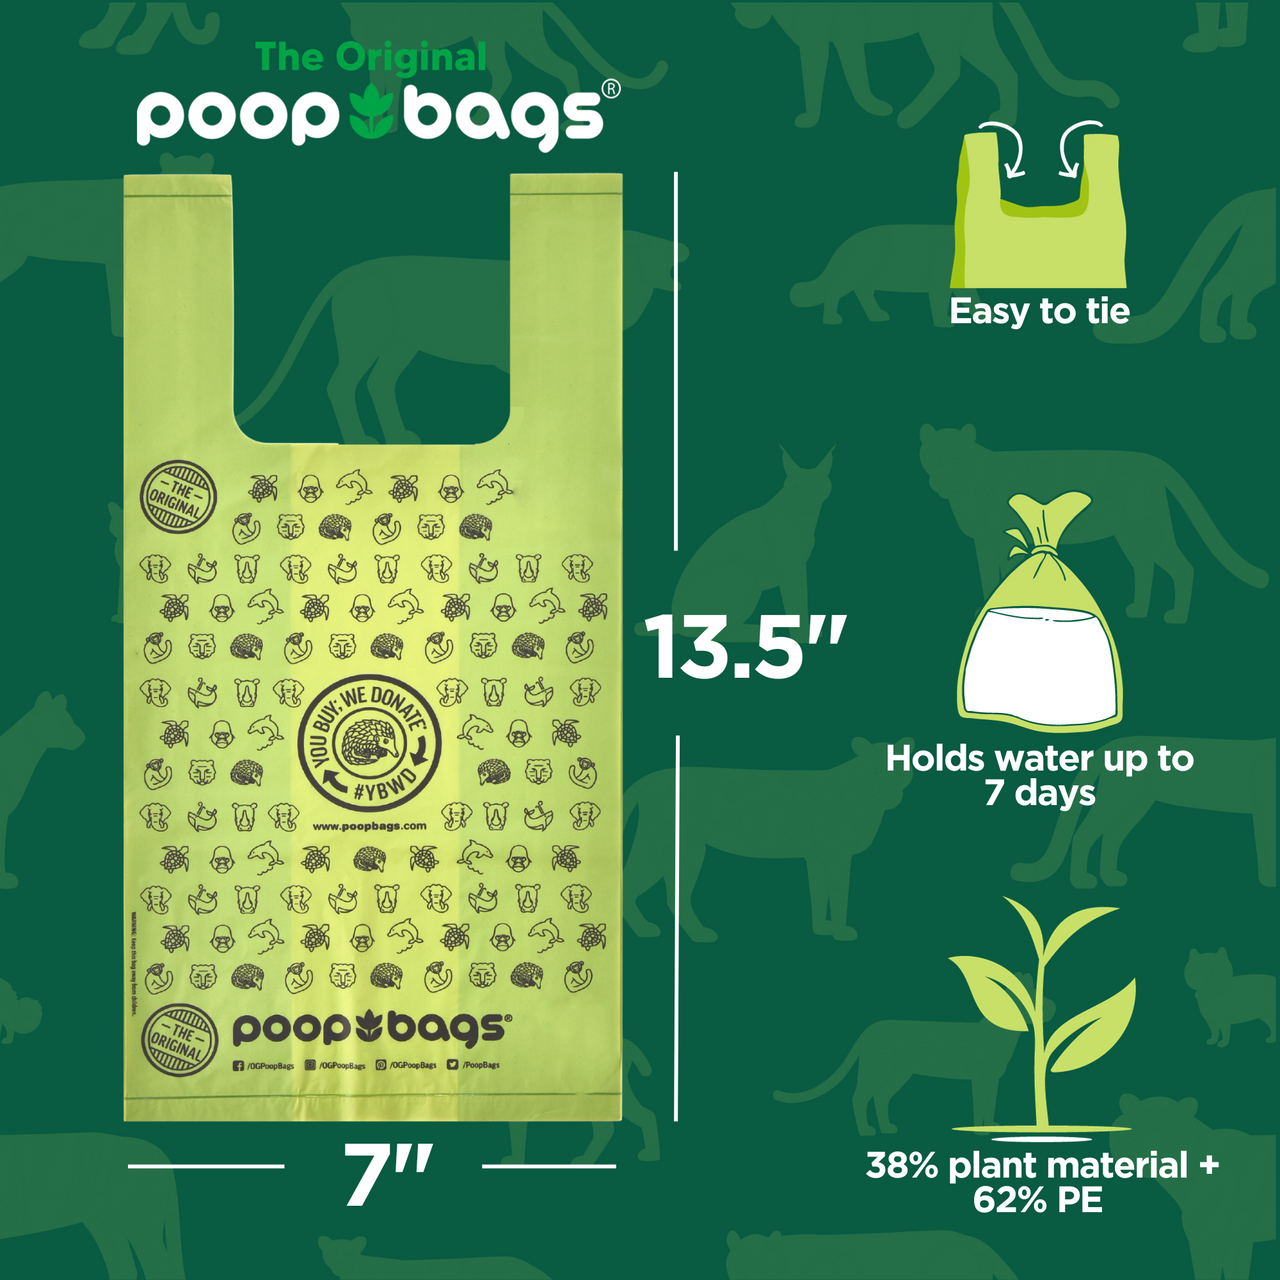 The Original Poop Bags® 240 Handle Tie Poop Bags
